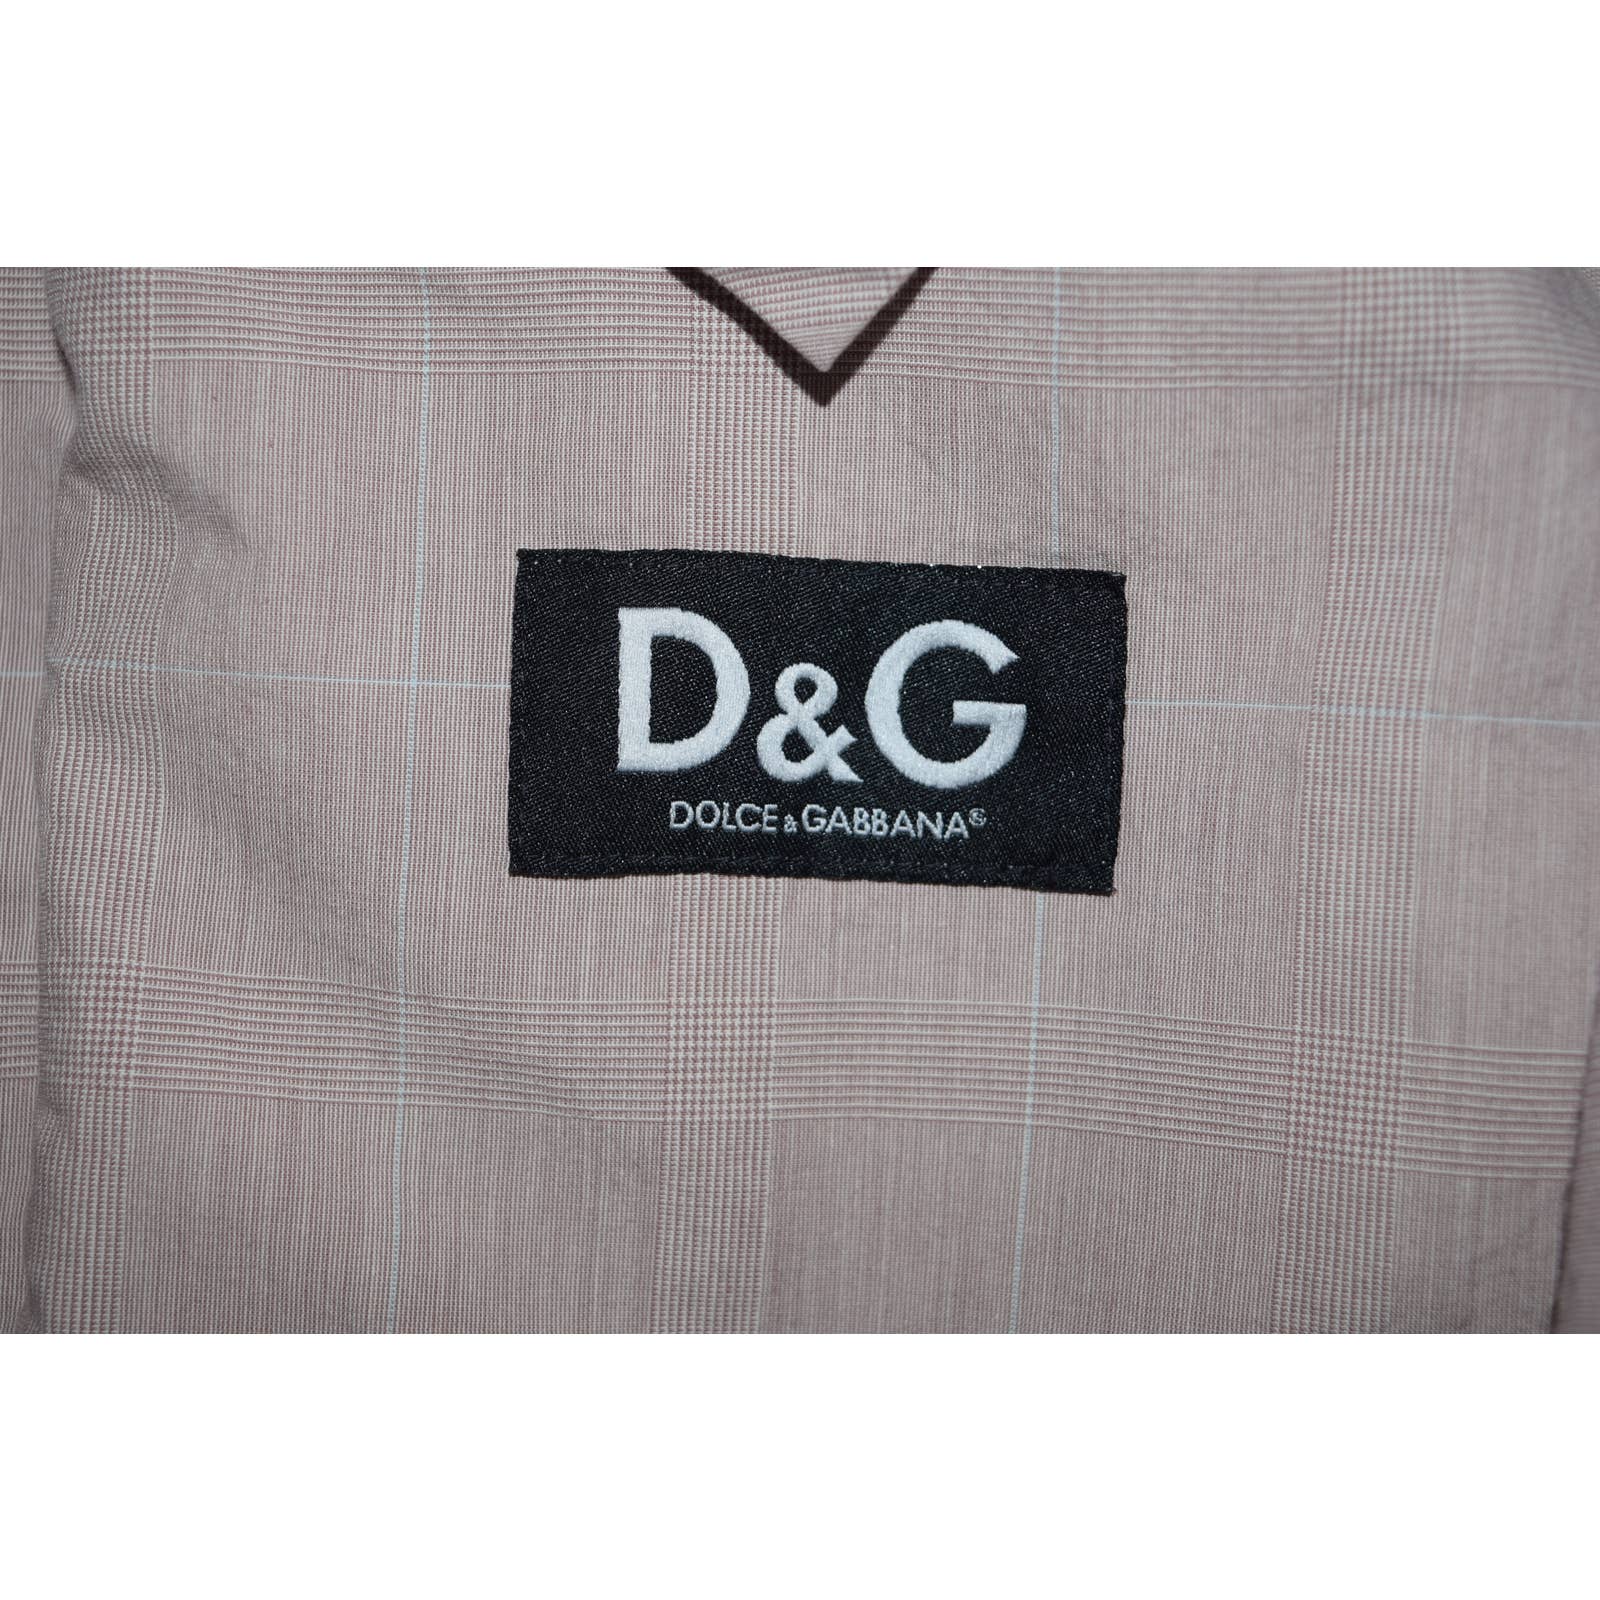 Dolce & Gabbana D&G Tan Khaki Plaid Cotton Jacket - M